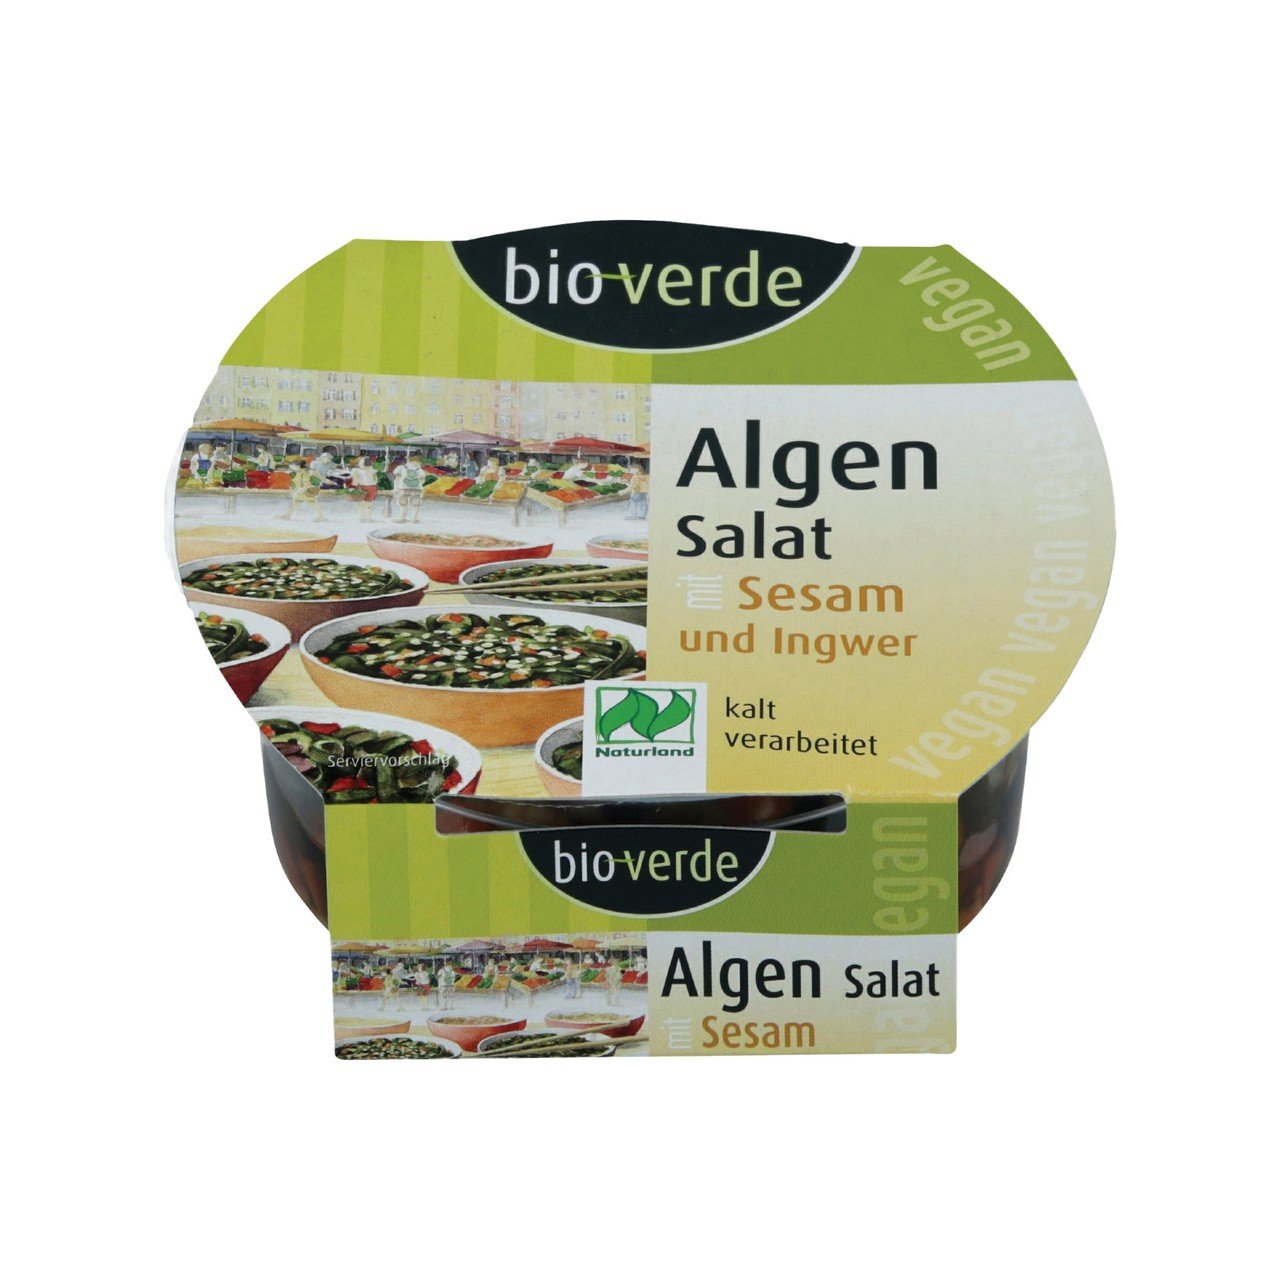 Bio-Verde Algensalat mit Sesam und Ingwer 100g